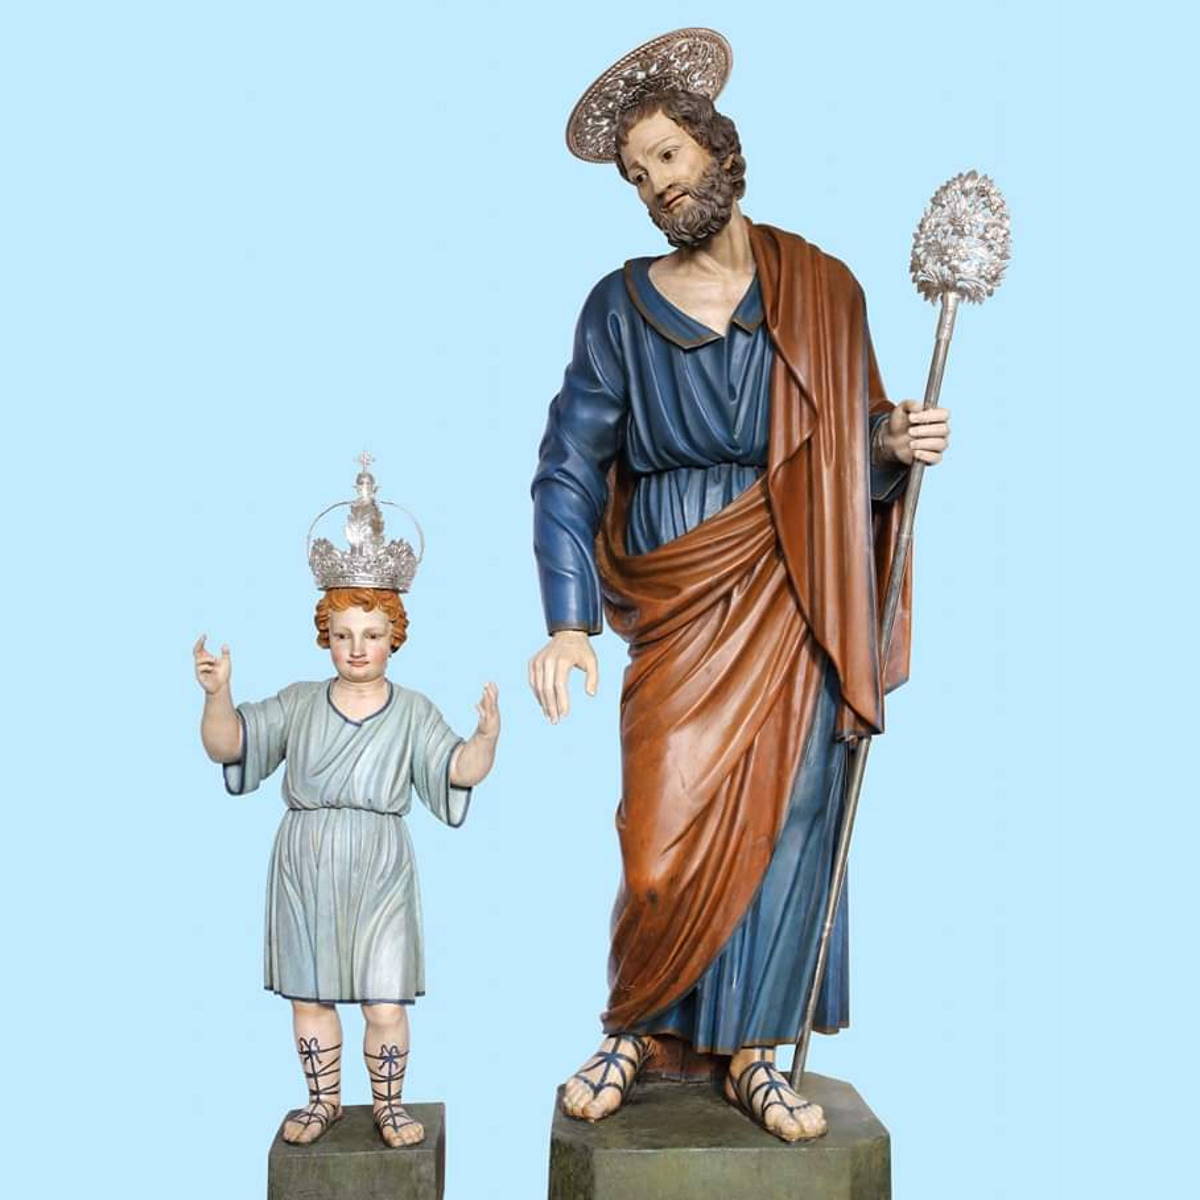 Sant’Agata di Militello (ME) - “S. Giuseppe col Bambino” torna al Duomo dopo il restauro